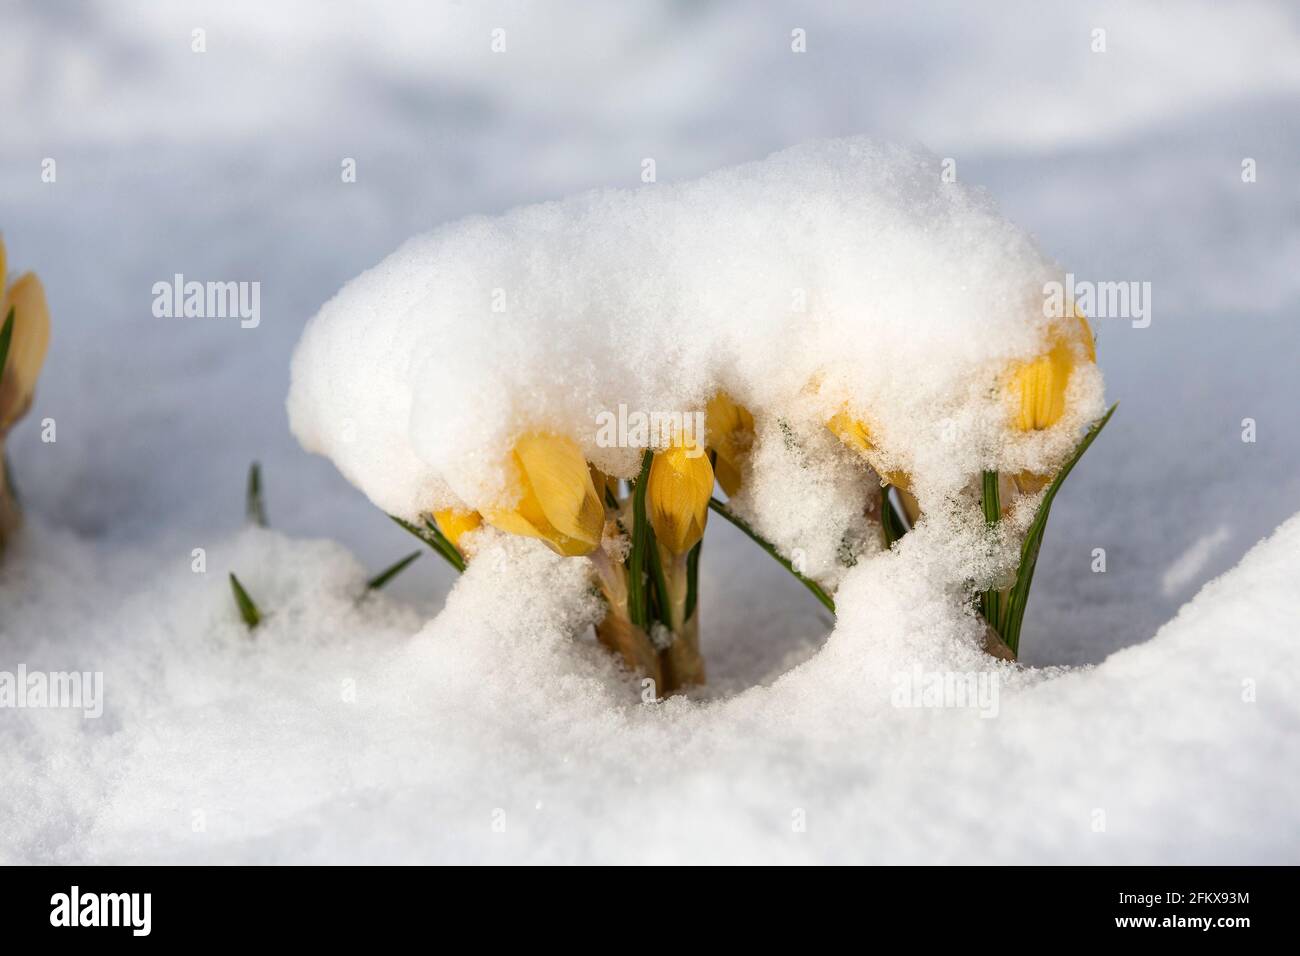 Croci gialli nella neve Foto Stock